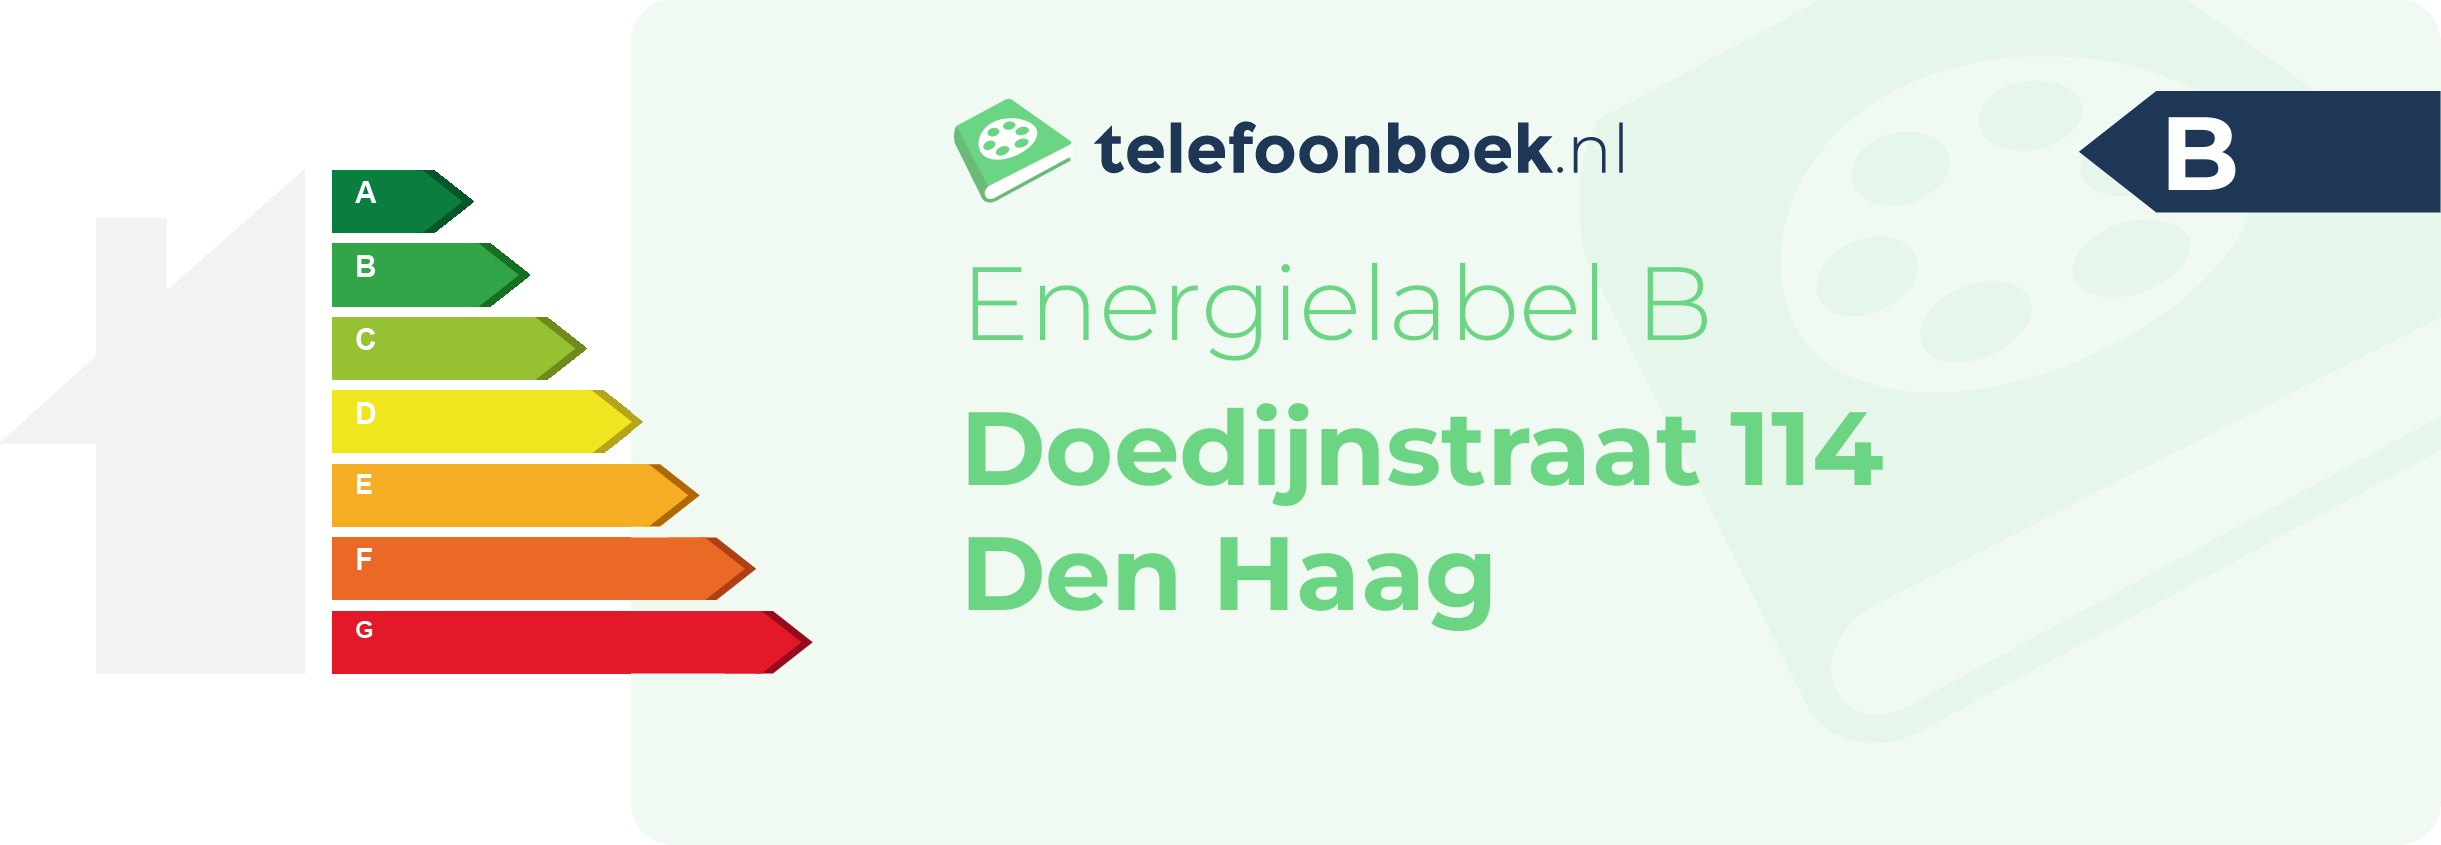 Energielabel Doedijnstraat 114 Den Haag